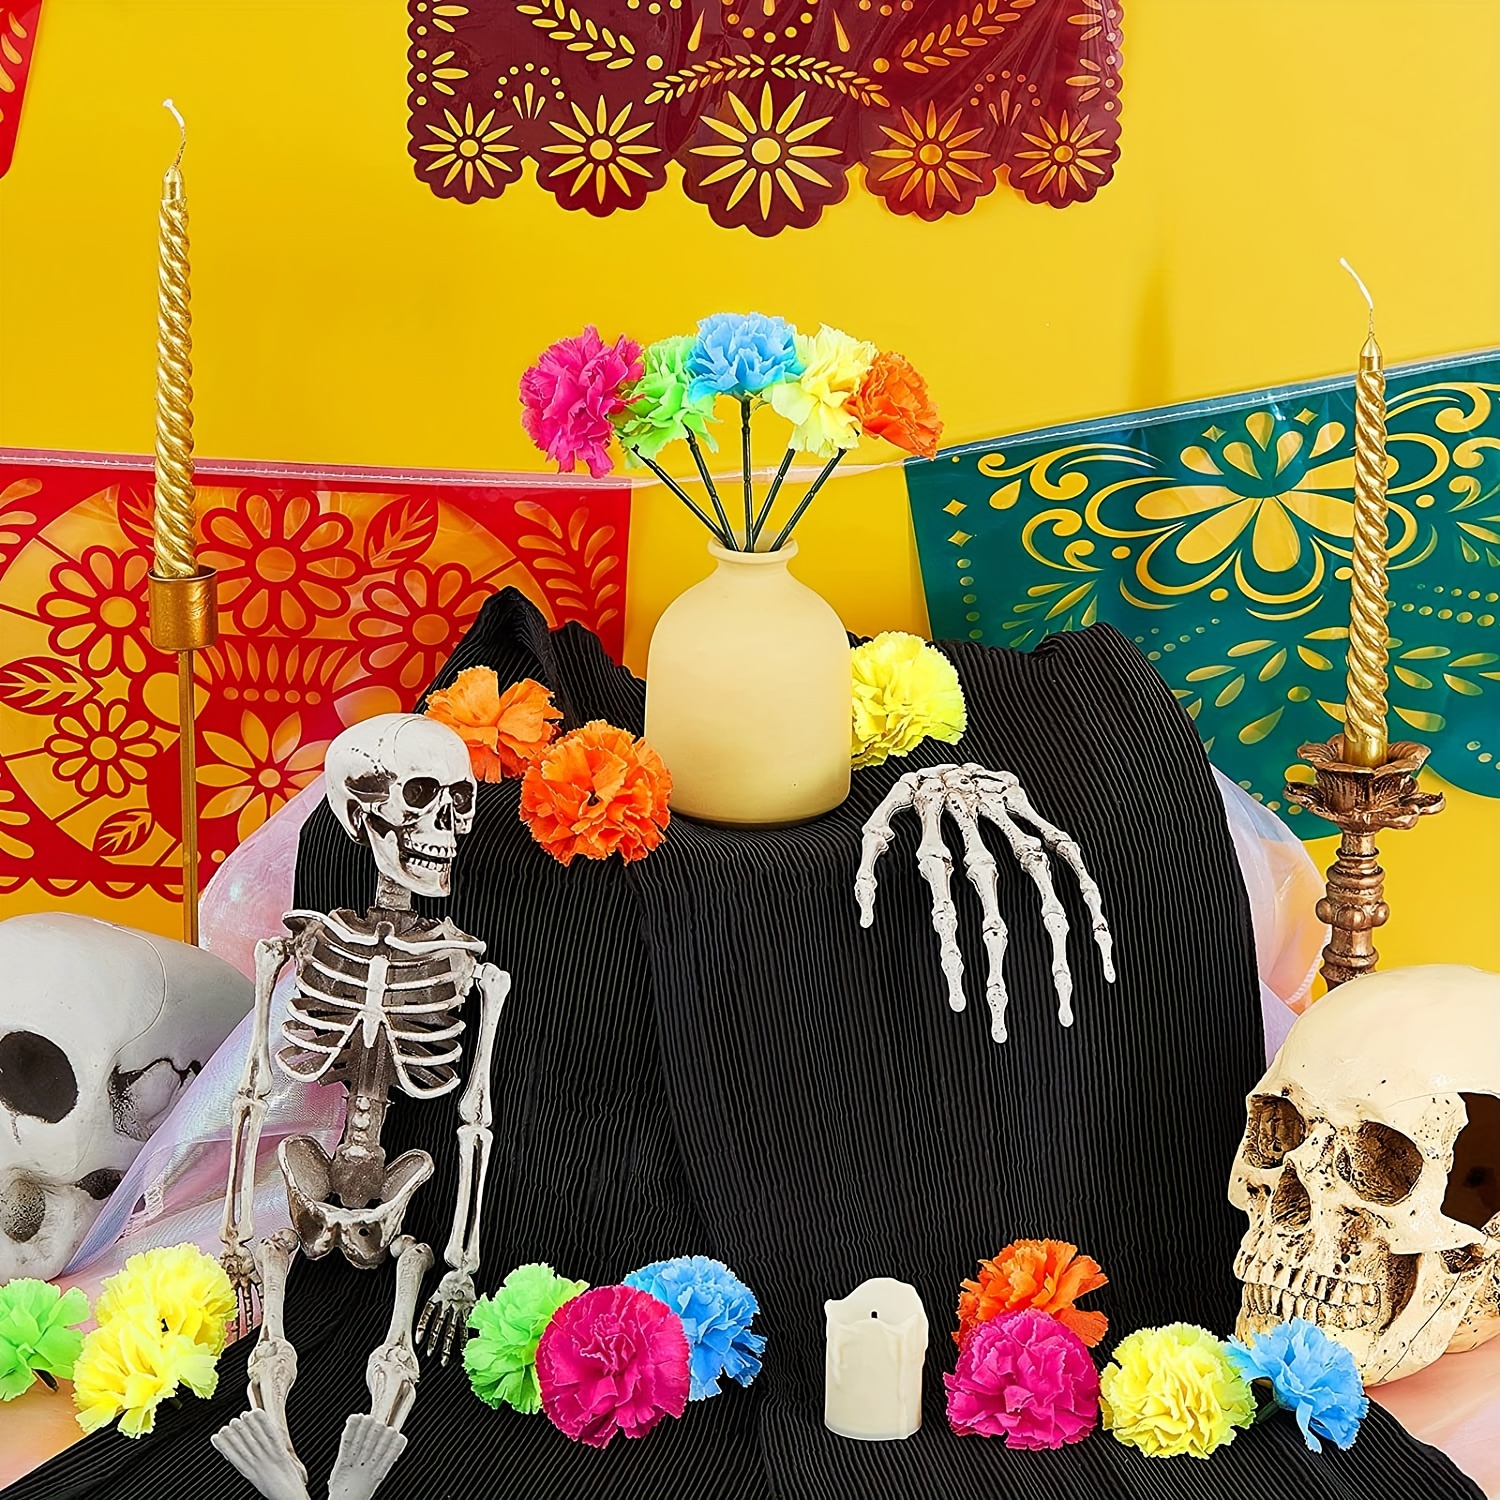 cabeza de calavera decorativa día de muertos ilustración de méxico